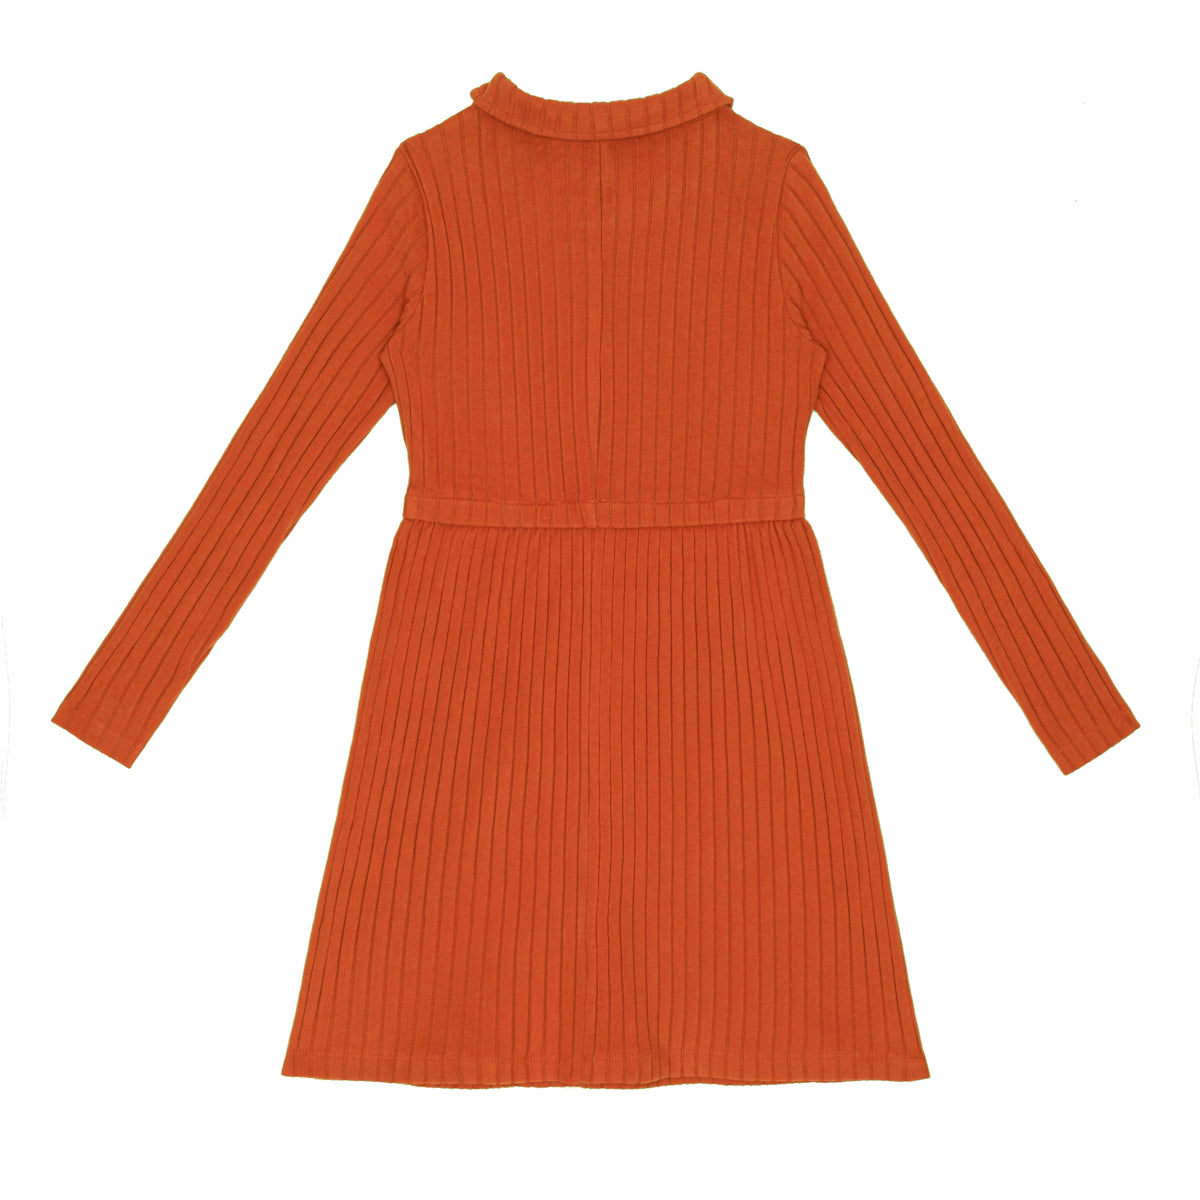 LITTLE HEDONIST -  Robe à manches longues orange neuve - 2 ans